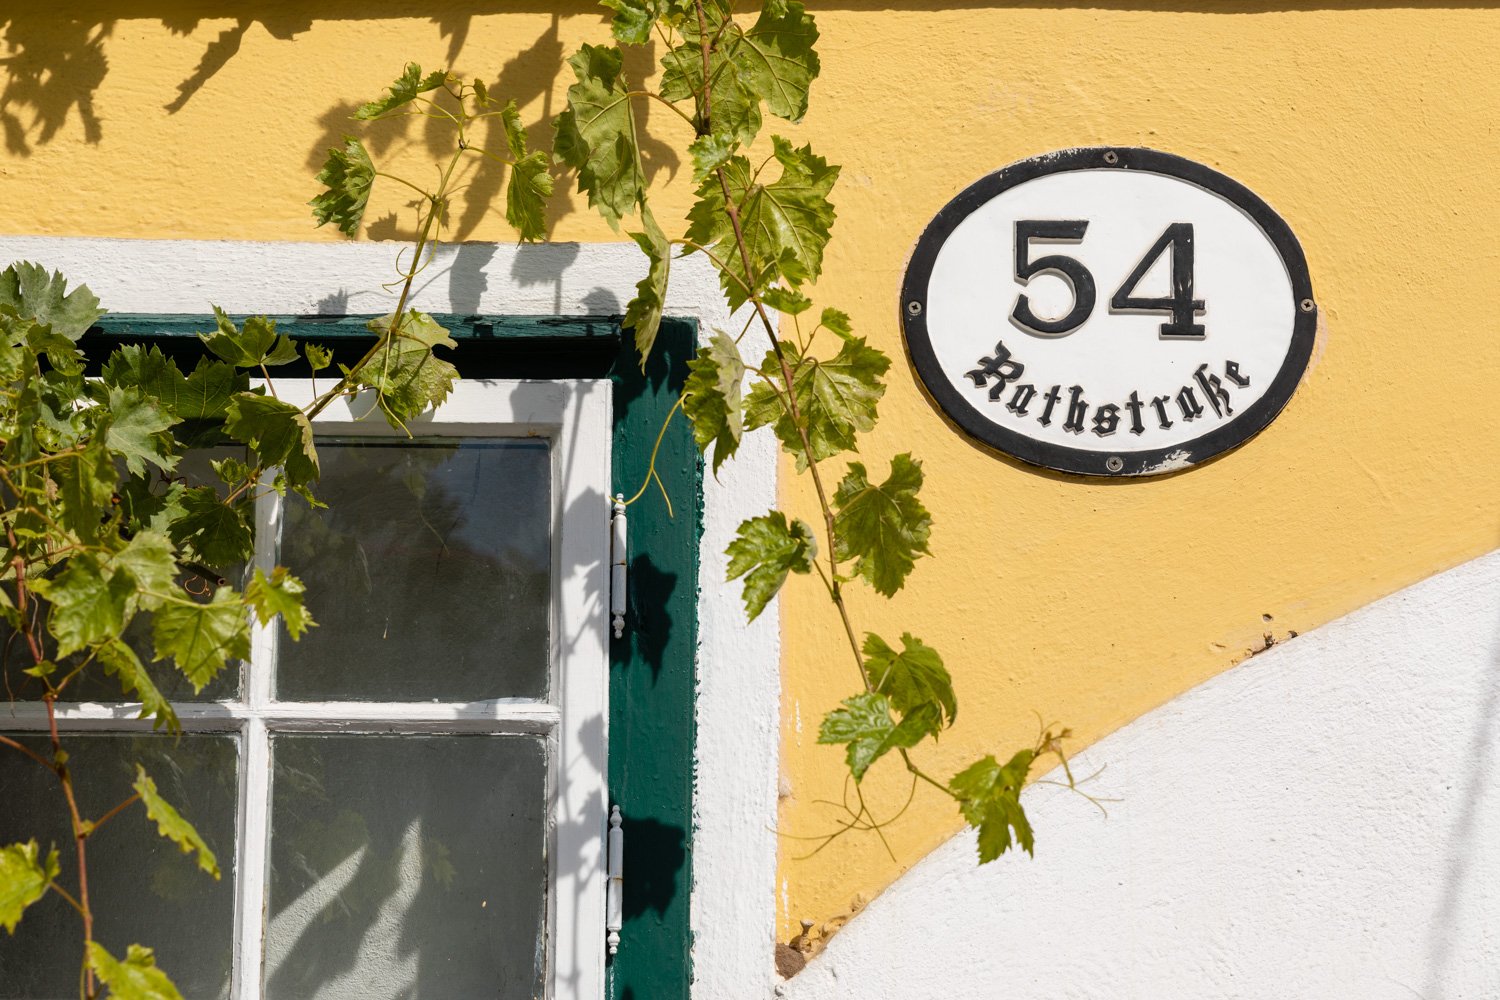 Traditional address Rathstraße 54 from the wine tavern Das Schreiberhaus